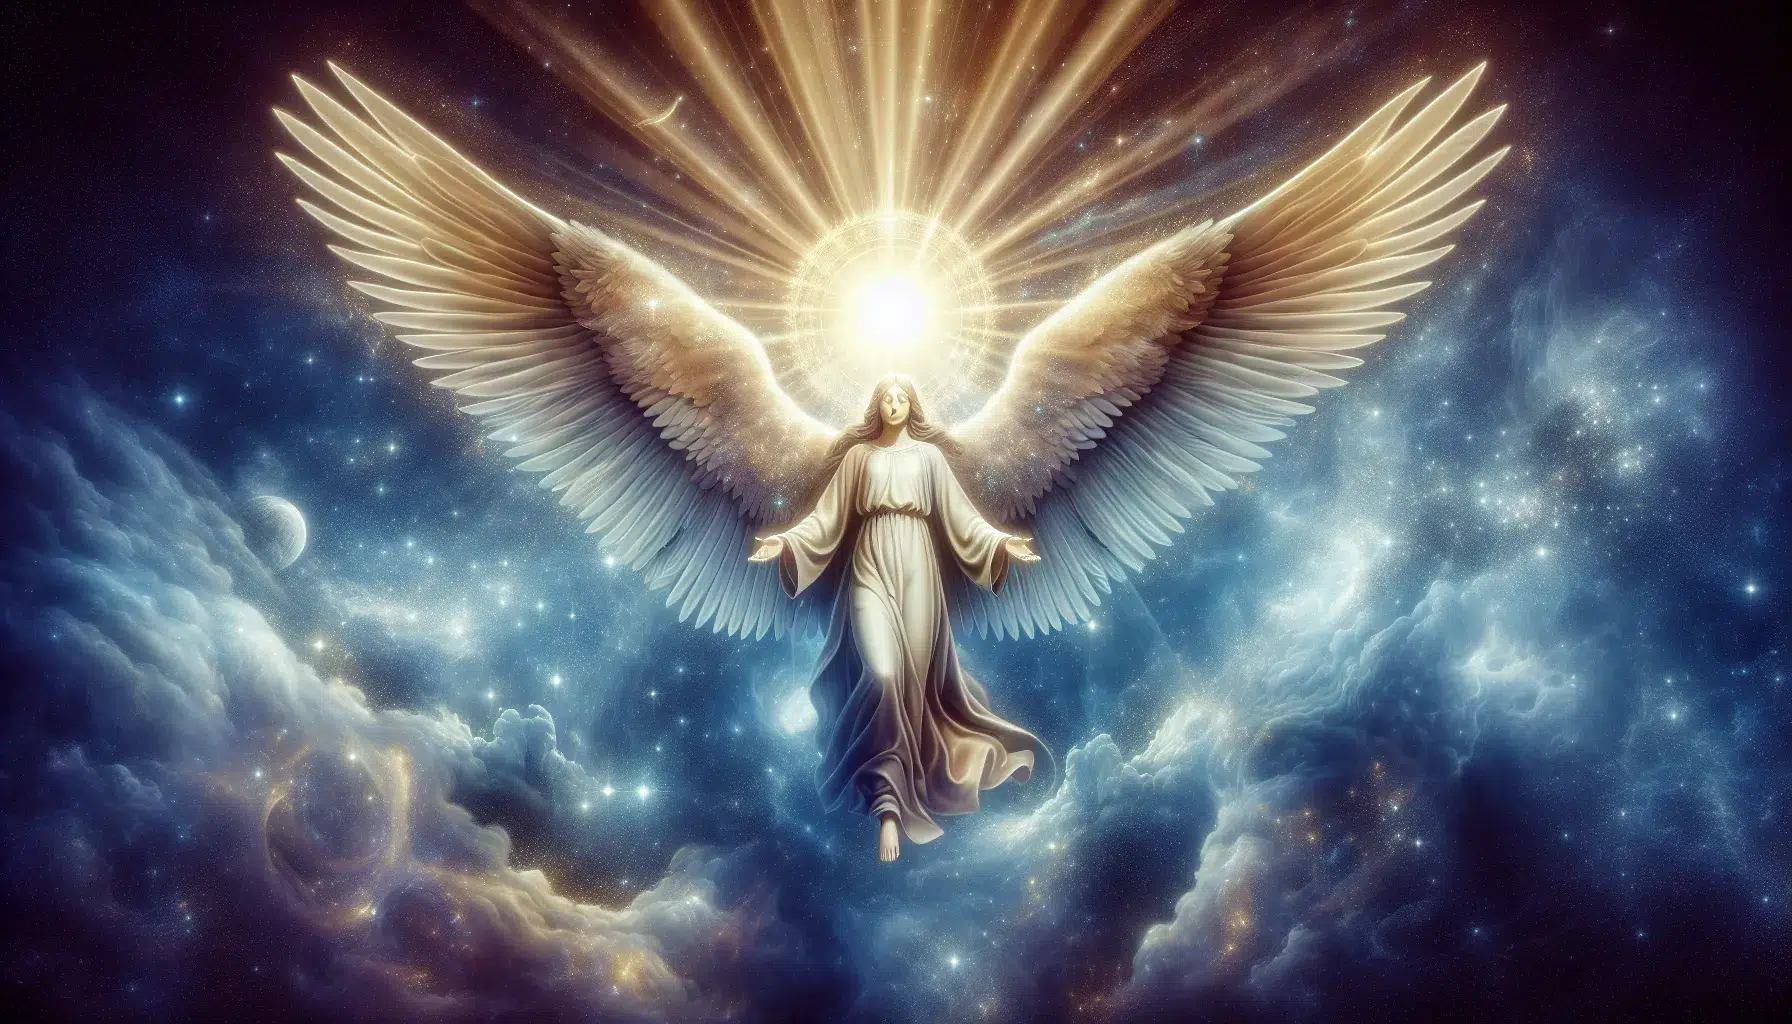 Representación de un ángel celestial con alas extendidas, símbolo de la Angelología y su conexión con lo divino.